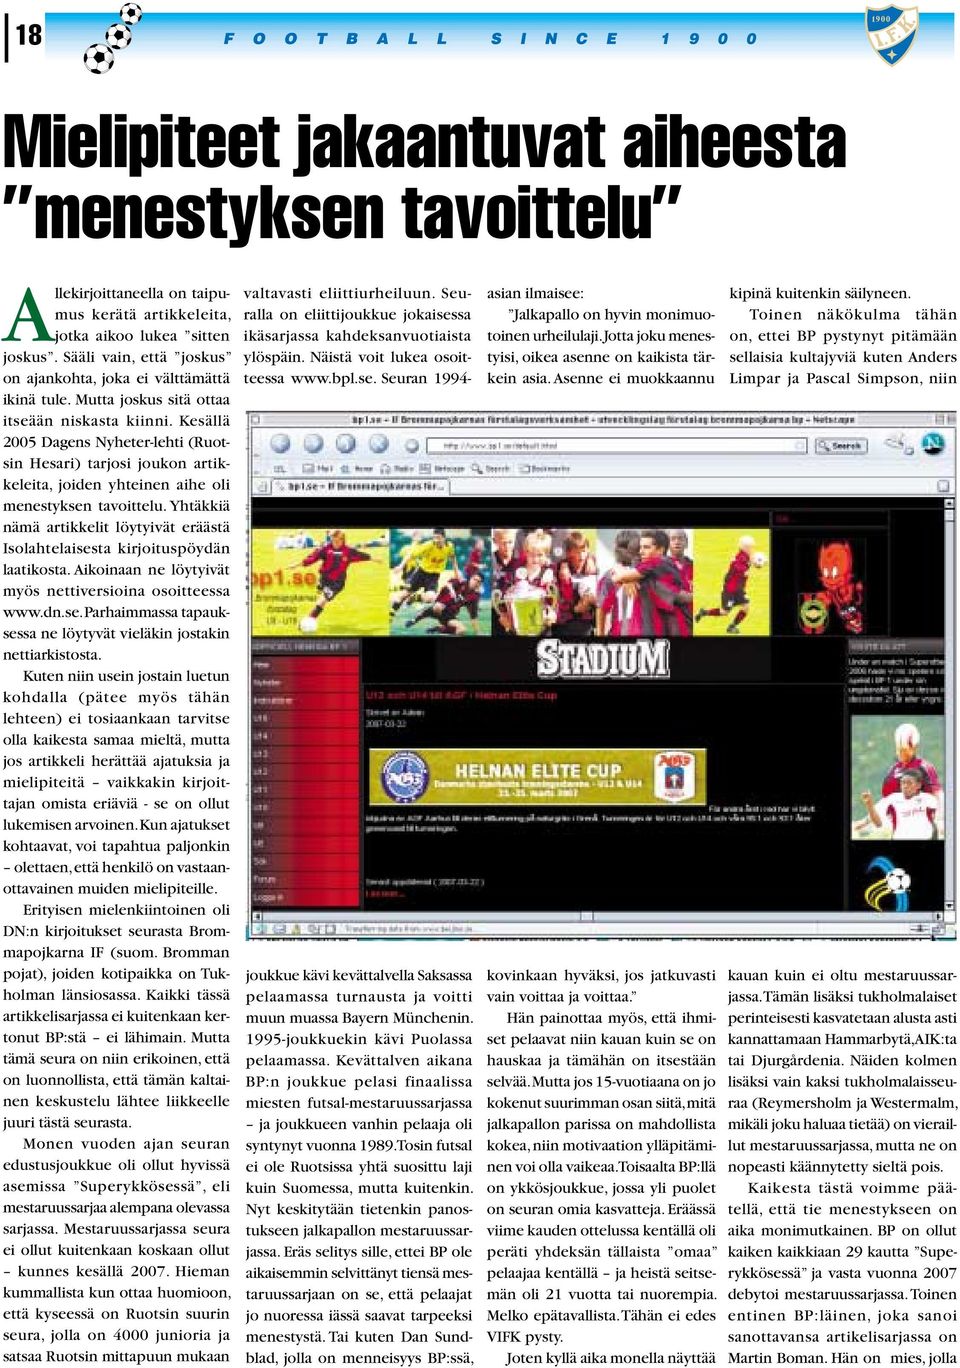 Kesällä 2005 Dagens Nyheter-lehti (Ruotsin Hesari) tarjosi joukon artikkeleita, joiden yhteinen aihe oli menestyksen tavoittelu.